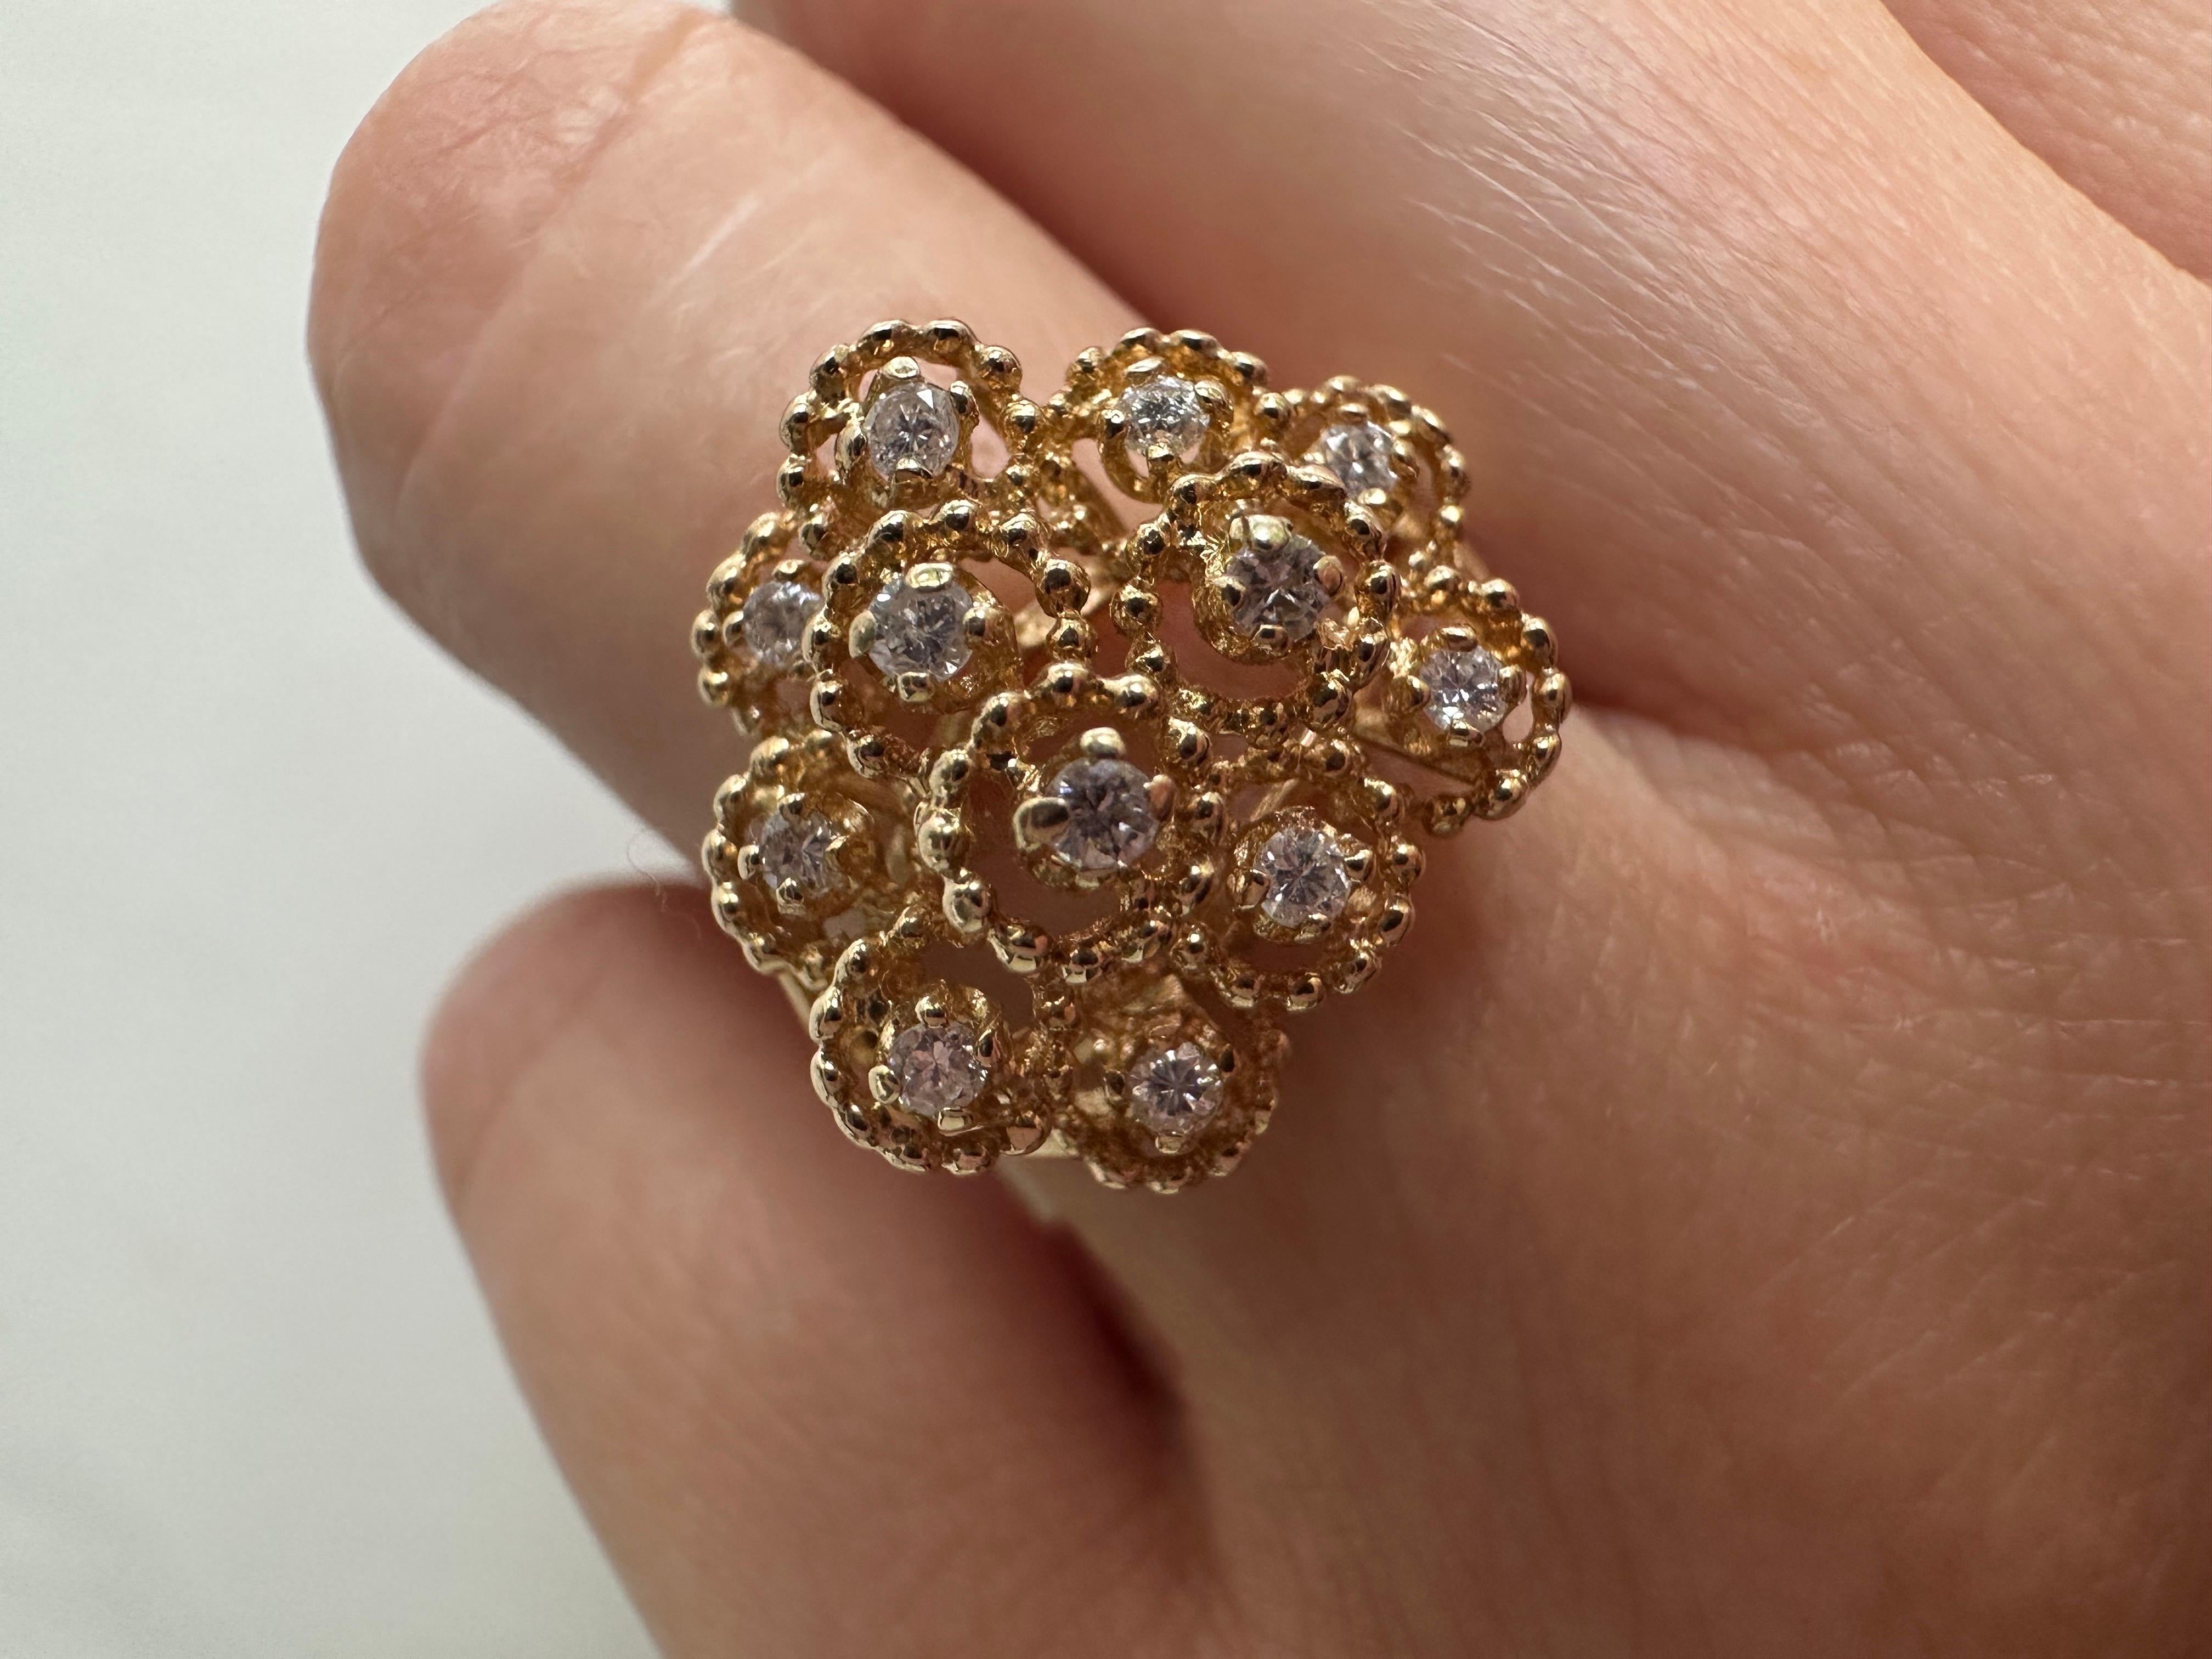 Hübscher Dandillion-Diamantring aus massivem 14KT-Gold mit funkelnden Diamanten, ein toller Ring für eine Nacht!

Metall Typ: 14KT

Natürliche(r) Diamant(en): 
Farbe: G-H
Schliff:Runder Brillant
Karat: 0,75ct
Klarheit: VS-SI (Durchschnitt)

Das